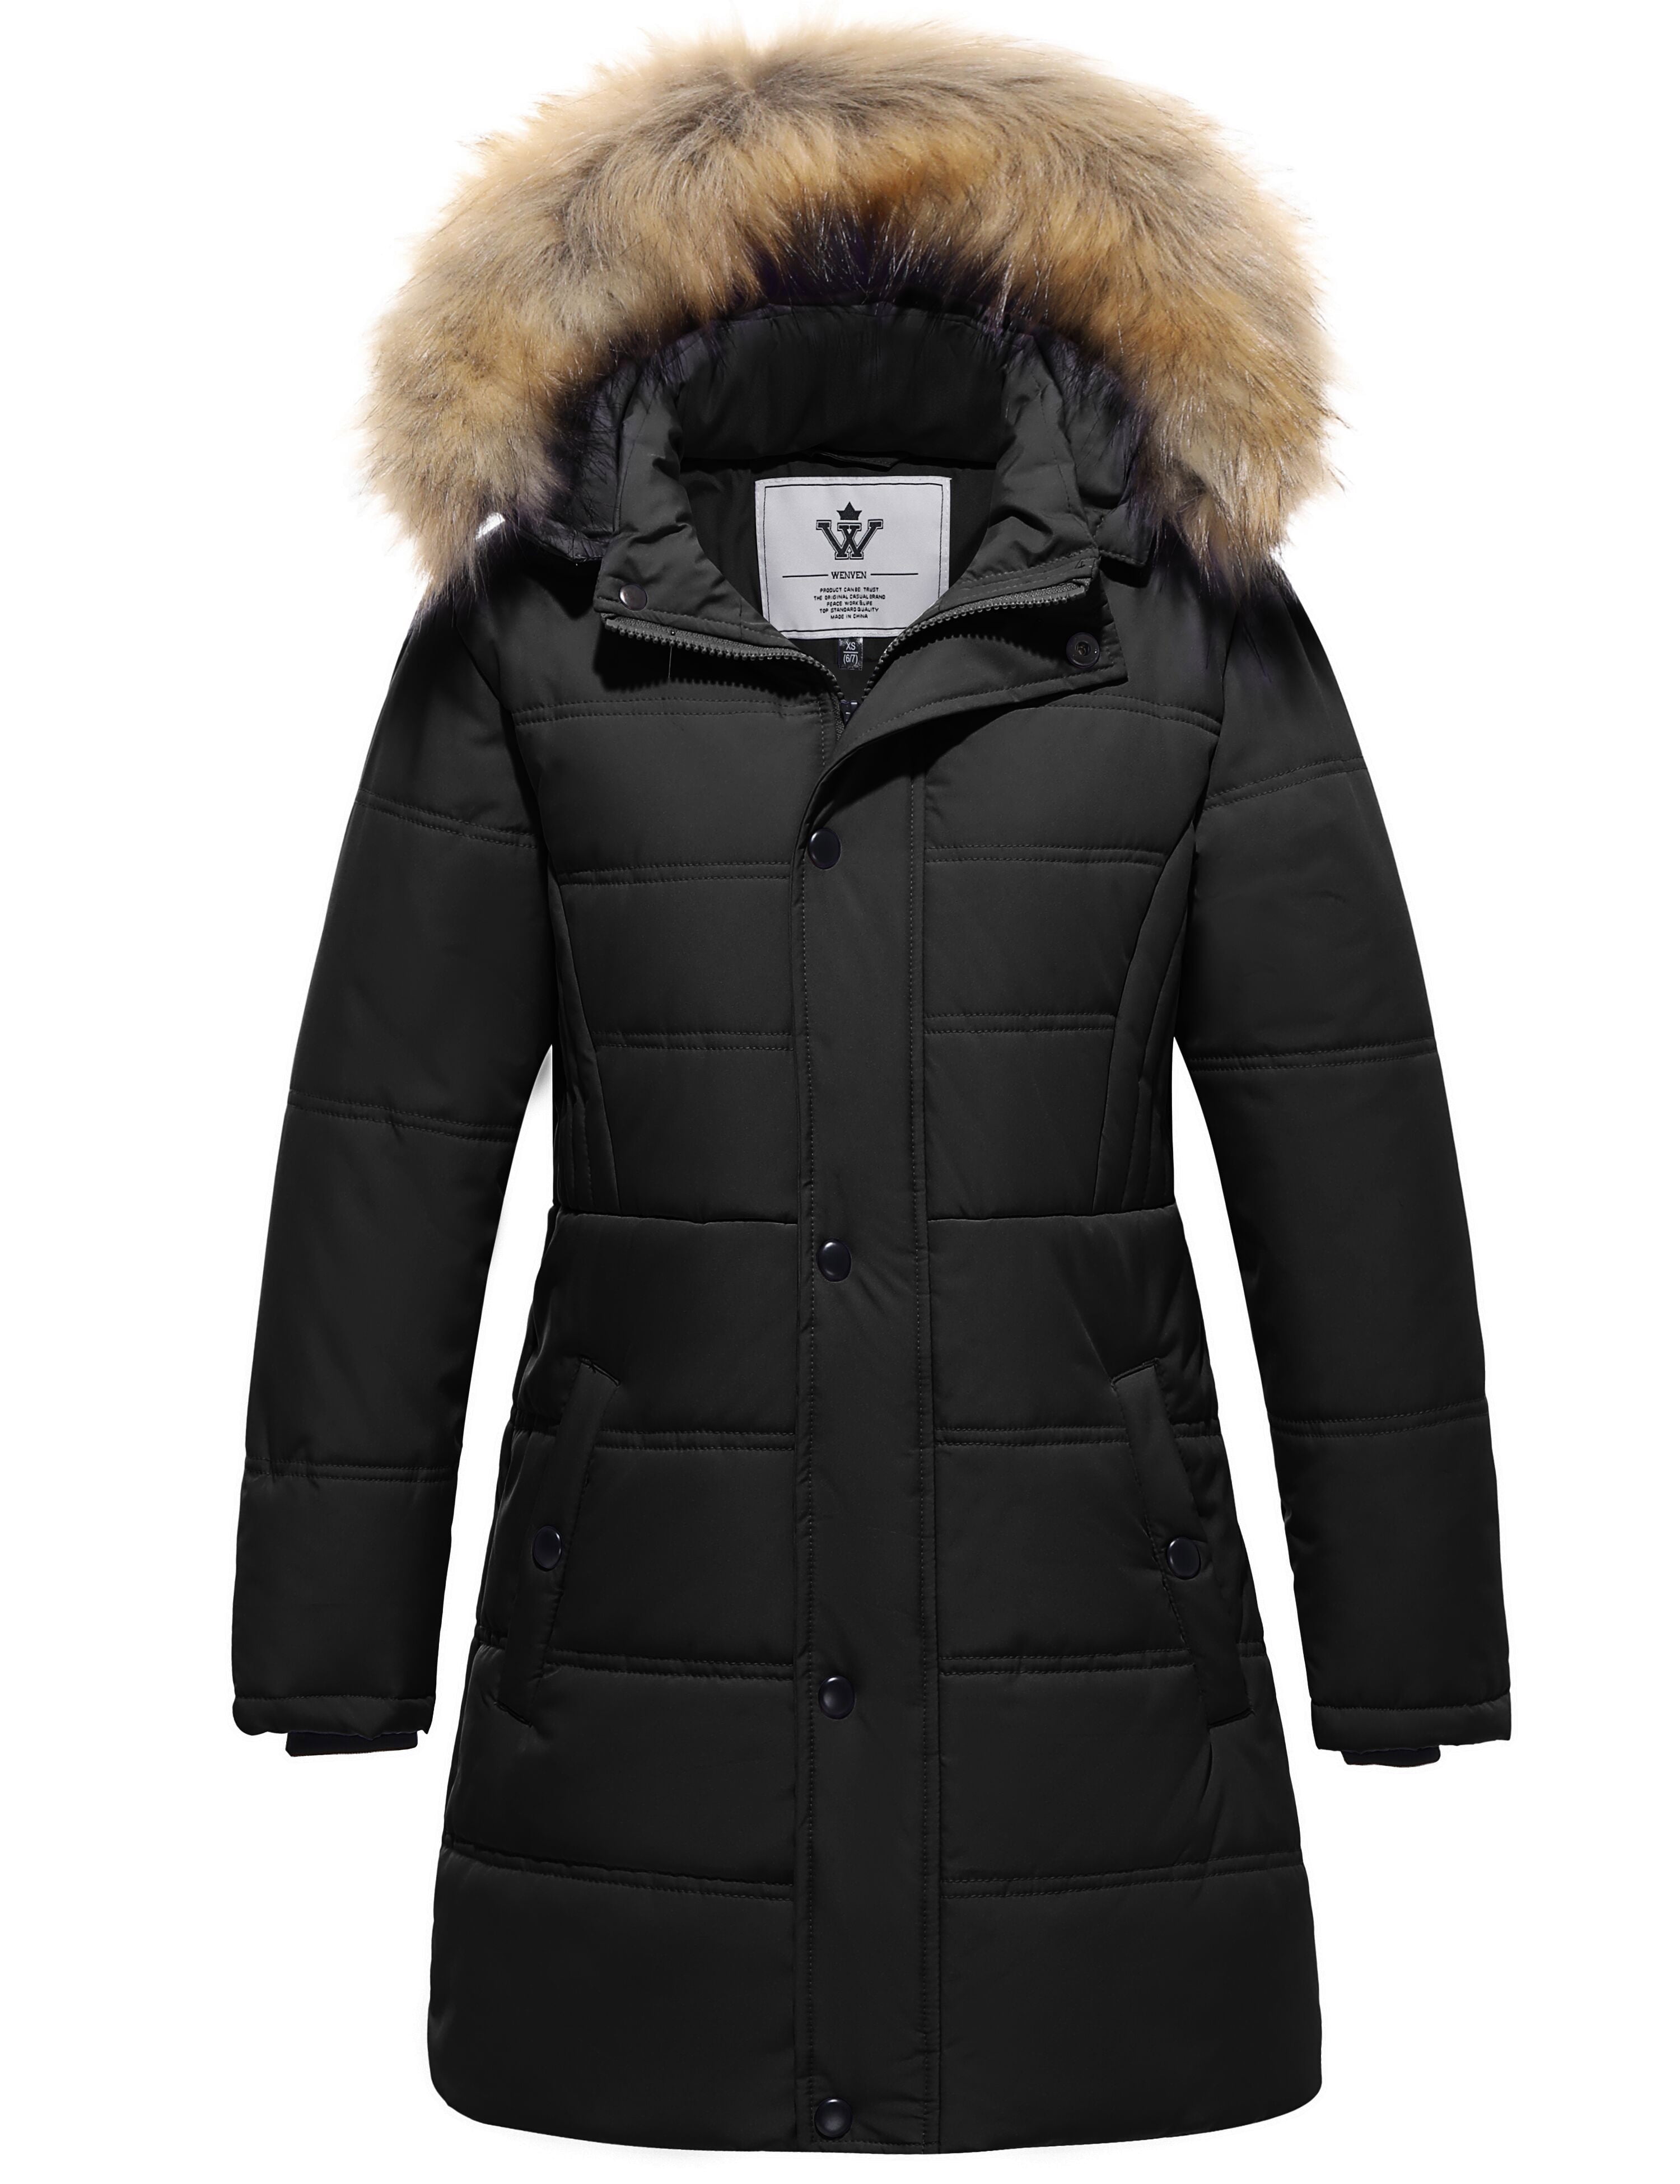 WenVen Girls Winter Coat Warm Puffer Jacket Hooded Waterproof Jacket ...